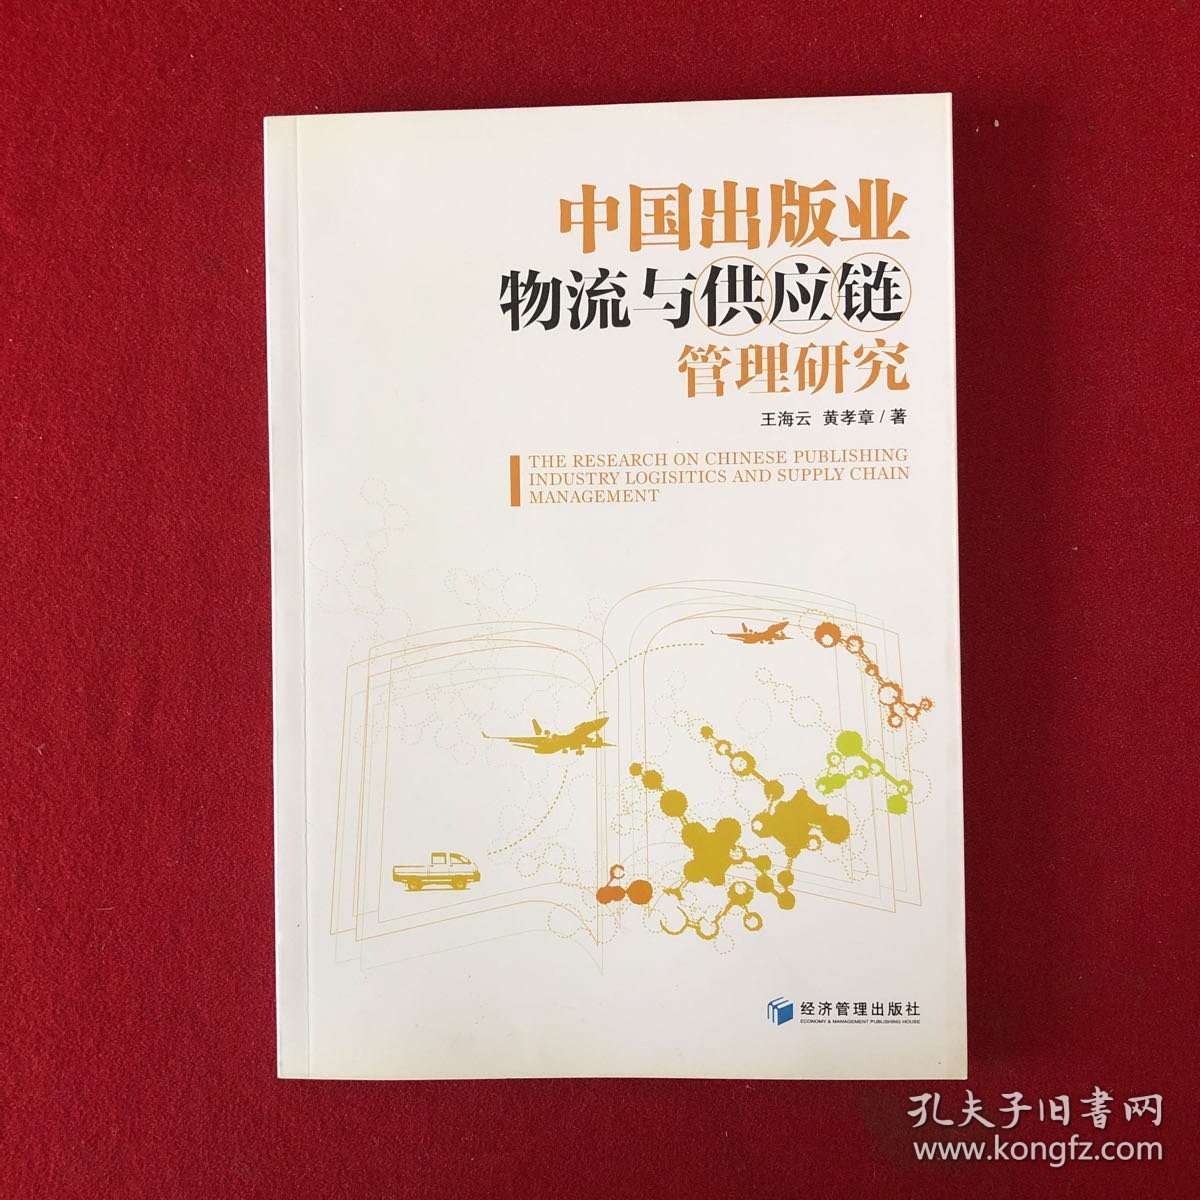 中国出版业物流与供应链管理研究